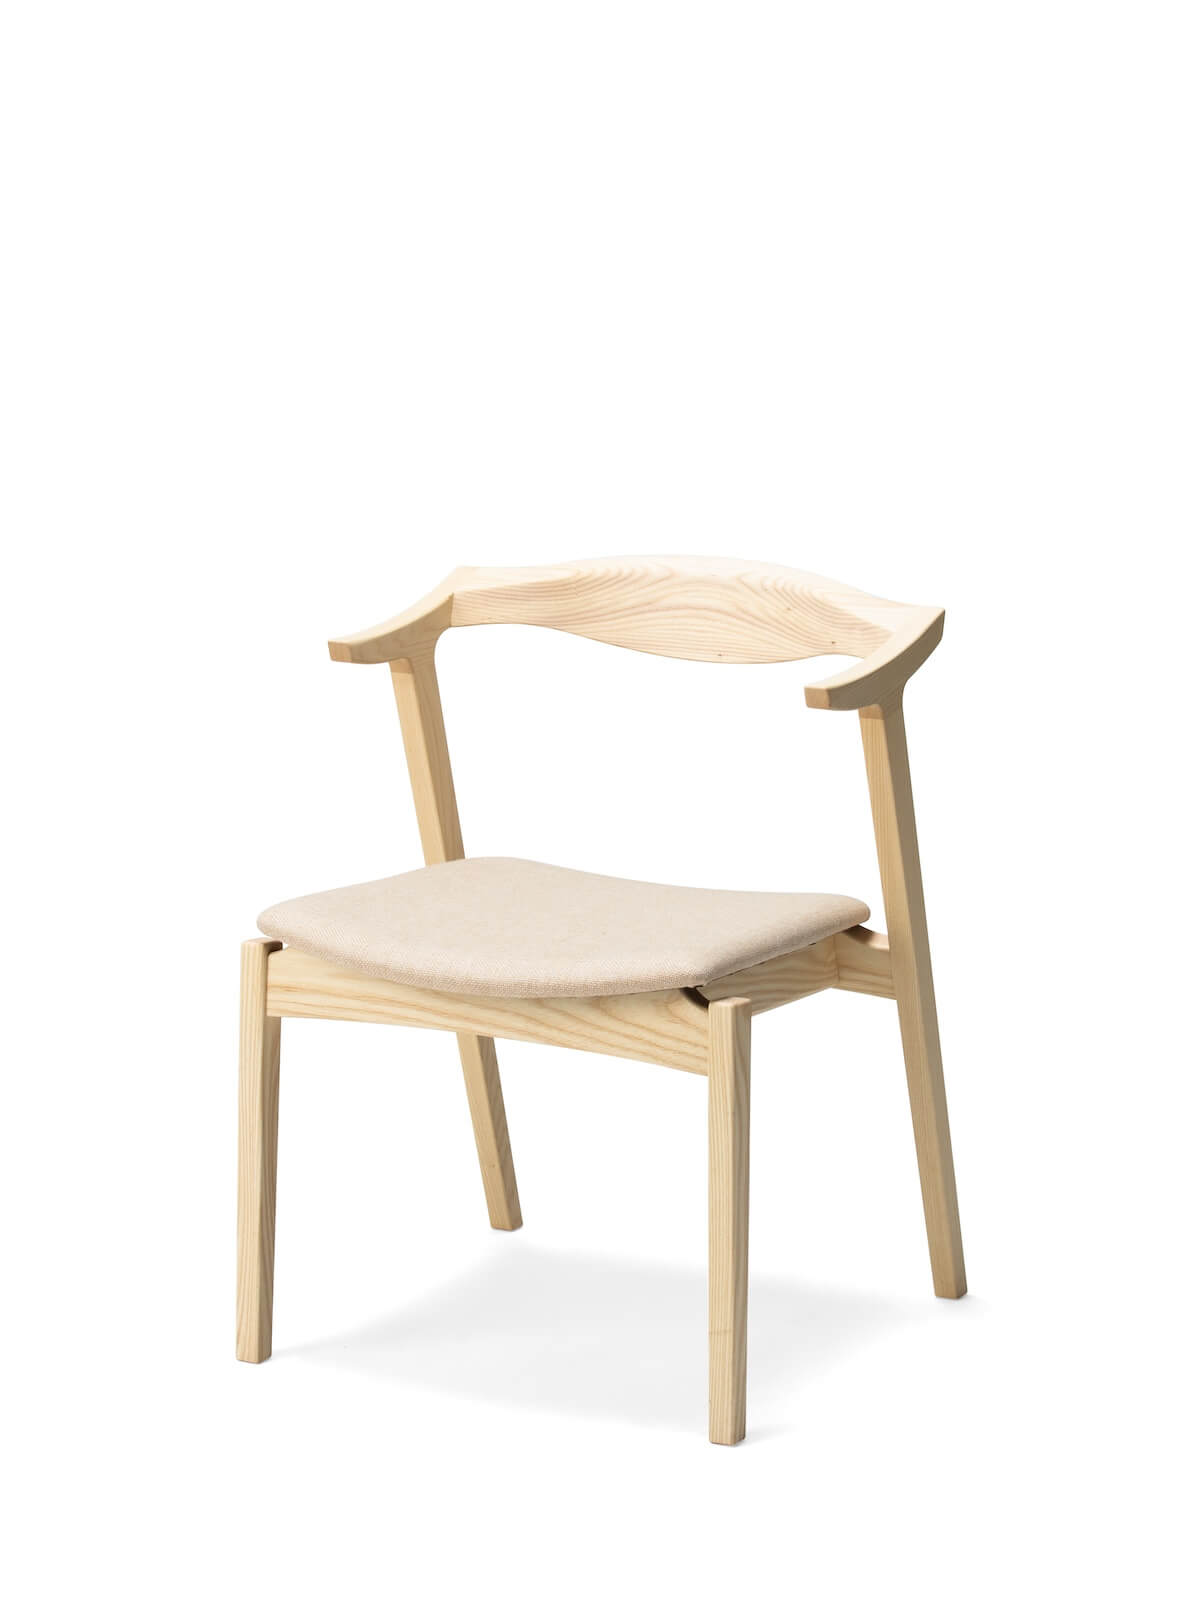 平田椅子製作所 / ガド ハーフアームチェア / ナチュラルホワイト Fabric by Maharam